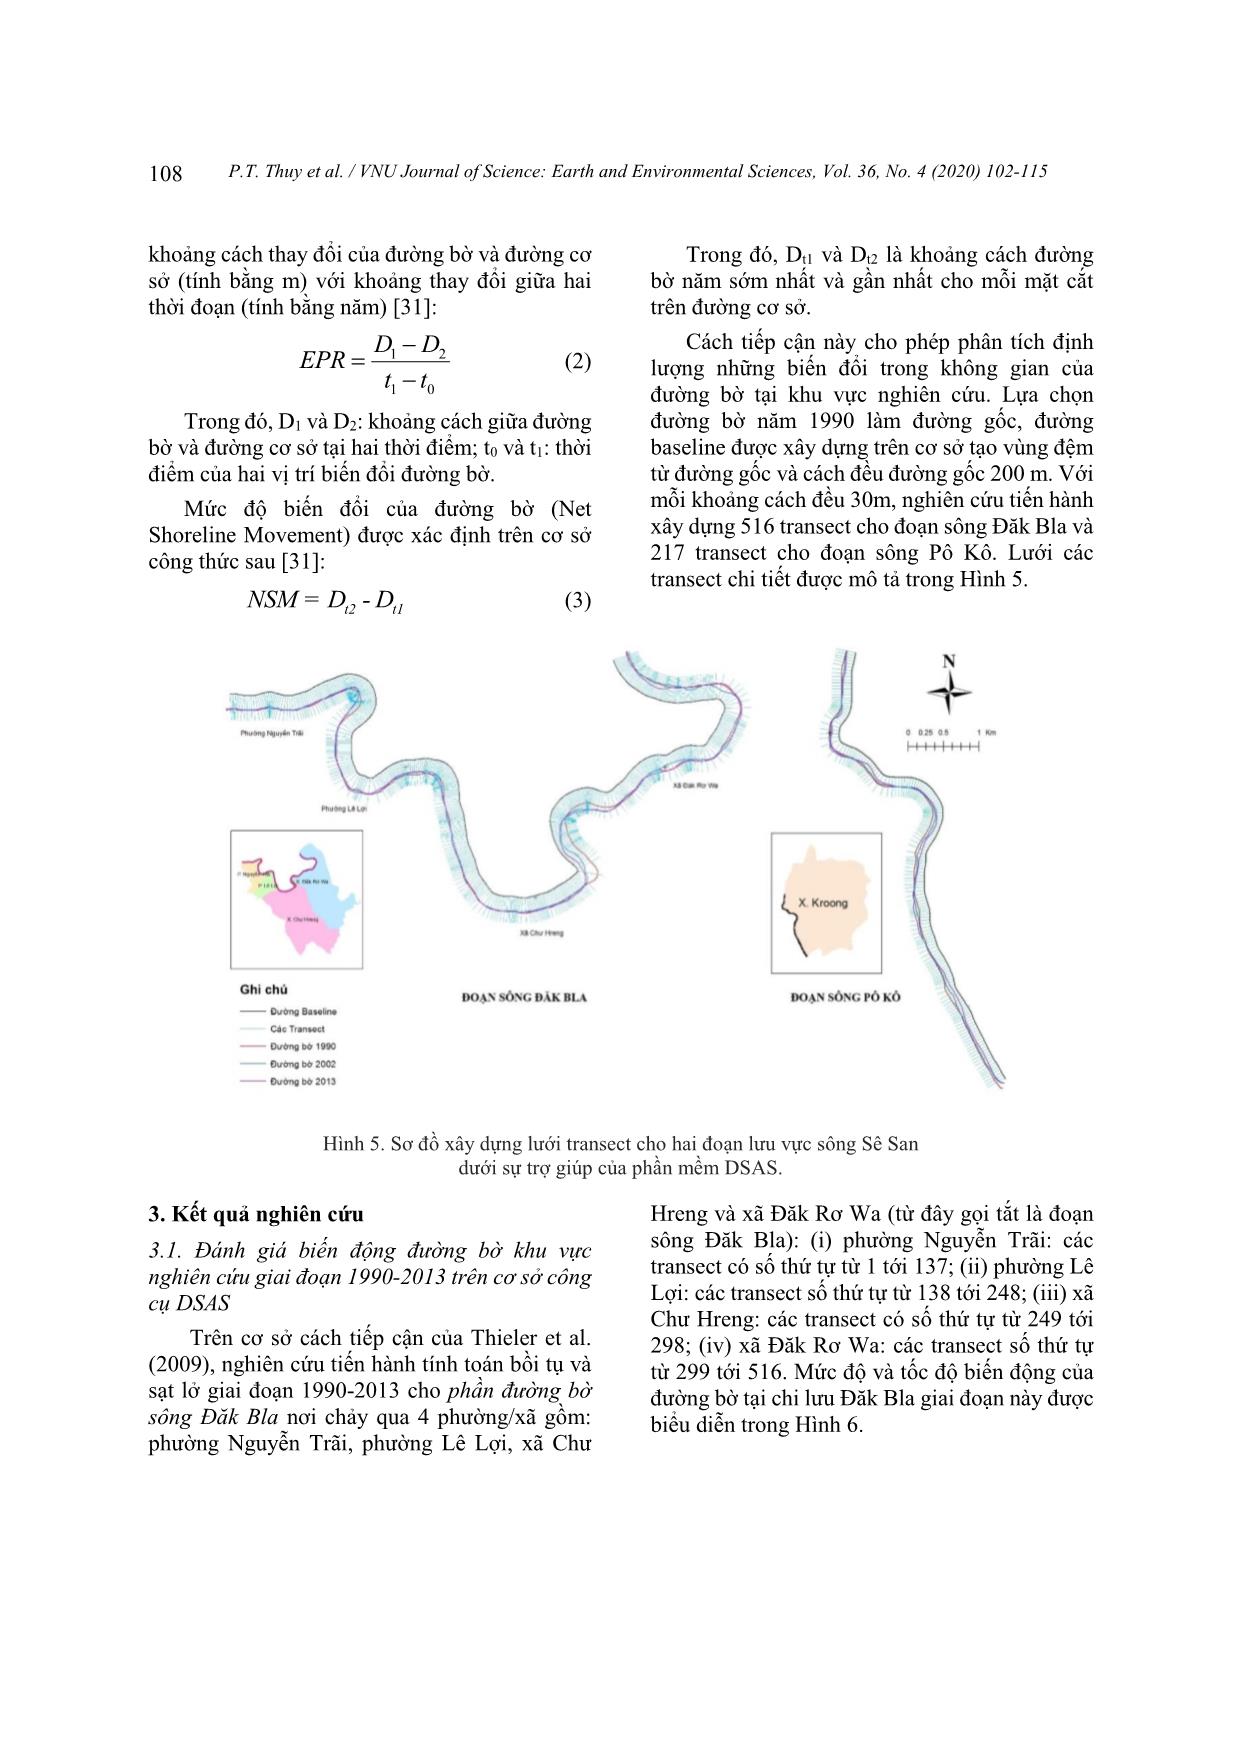 Nghiên cứu xác định biến động đường bờ thượng lưu sông Sê San, tỉnh Kontum trên cơ sở phân tích dữ liệu viễn thám đa thời gian trang 7